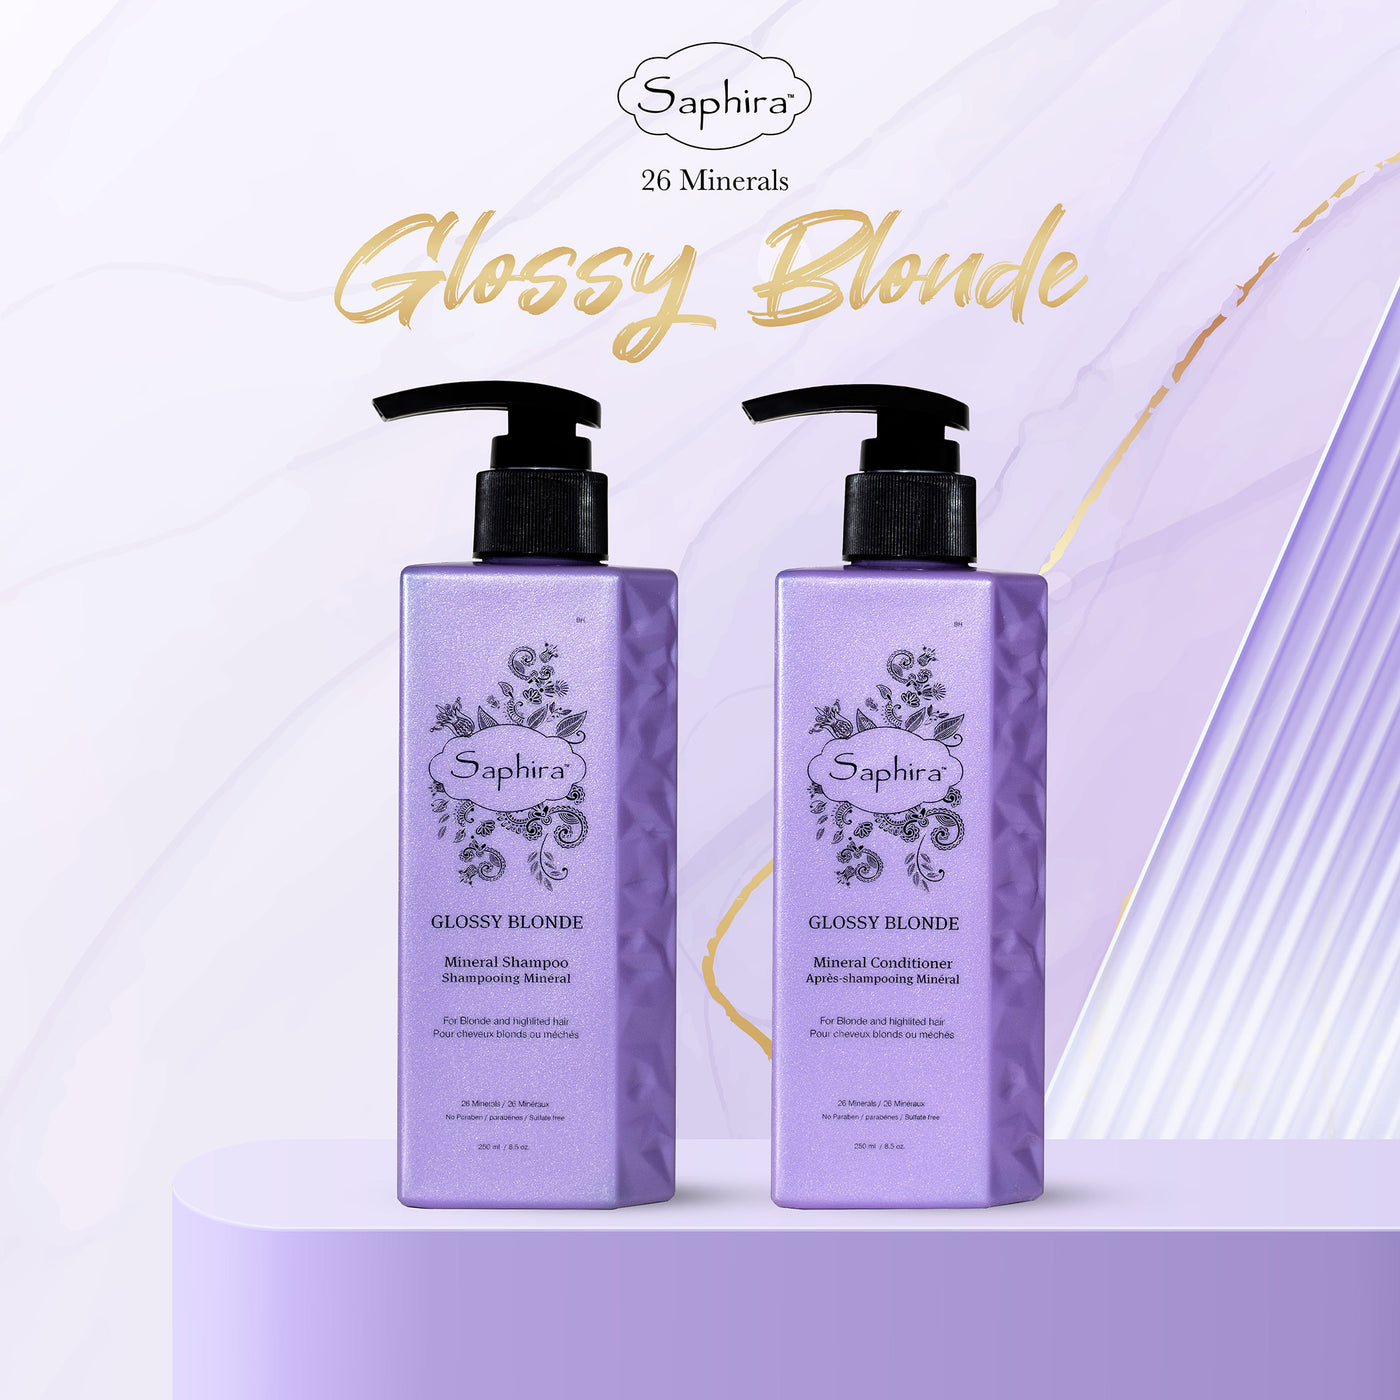 Glossy Blonde Shampoo - Saphira